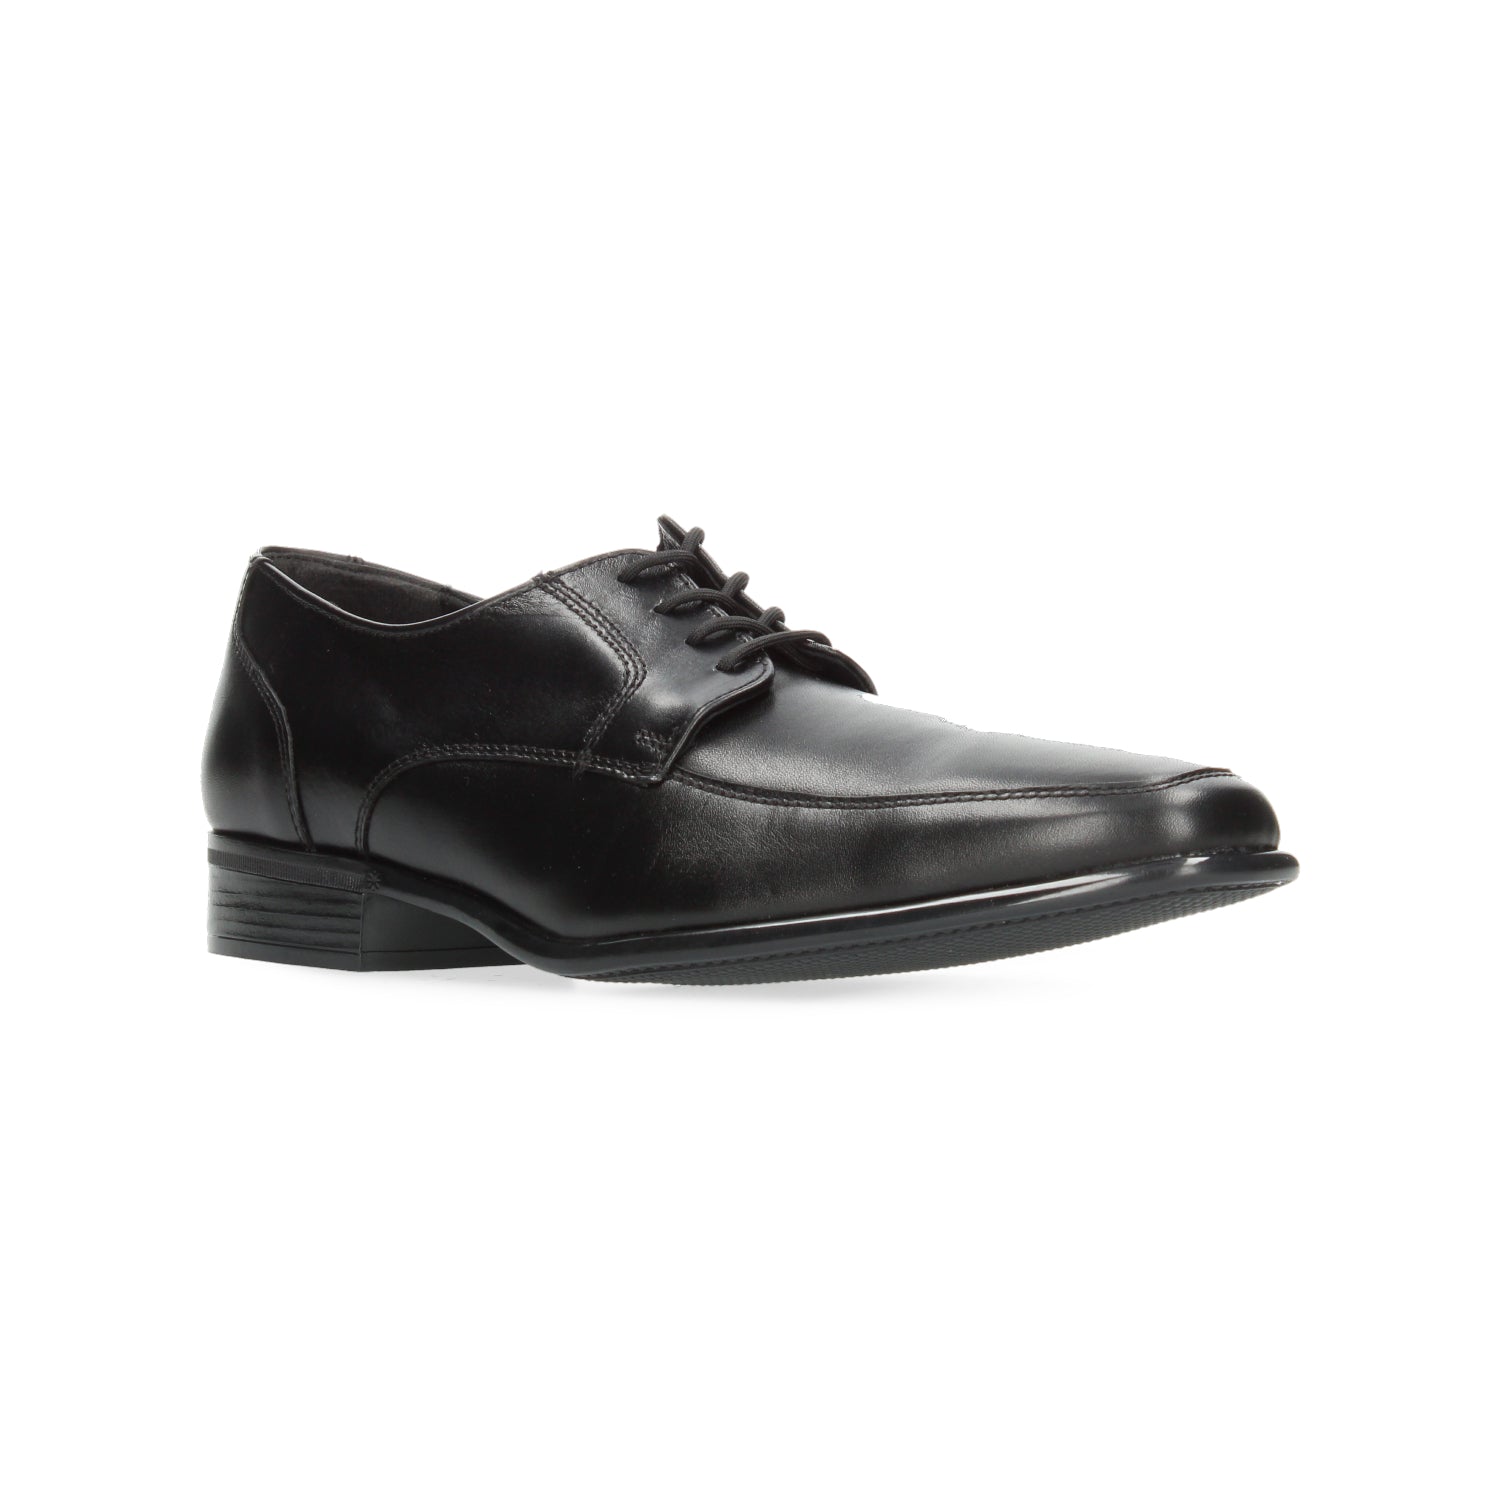 Zapato de Vestir Gino cherruti para Hombre 4416 Negro [GCH328] - Zapaterias Torreon